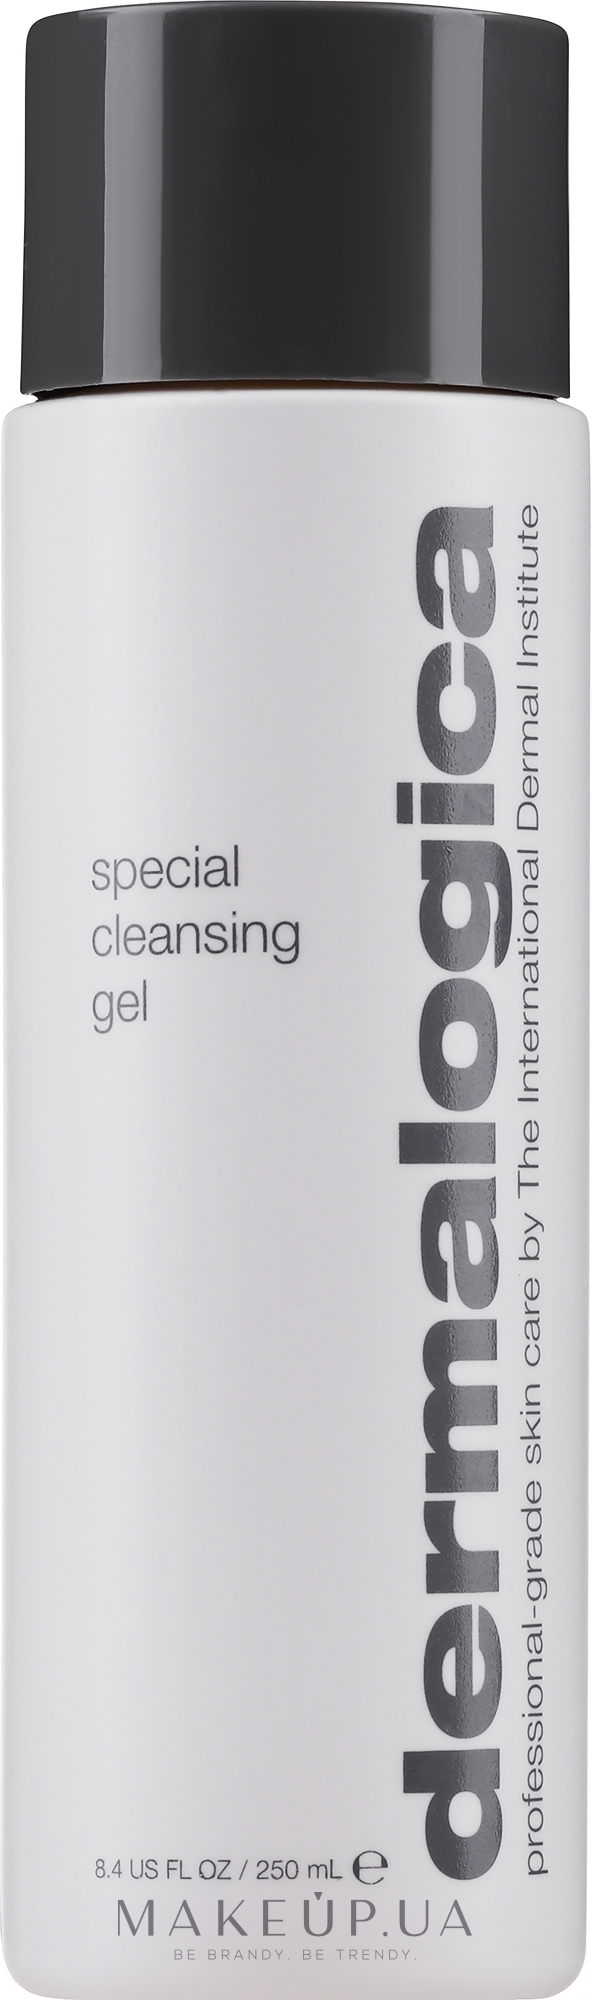 Спеціальний гель-очищувач для обличчя - Dermalogica Special Cleansing Gel — фото 250ml